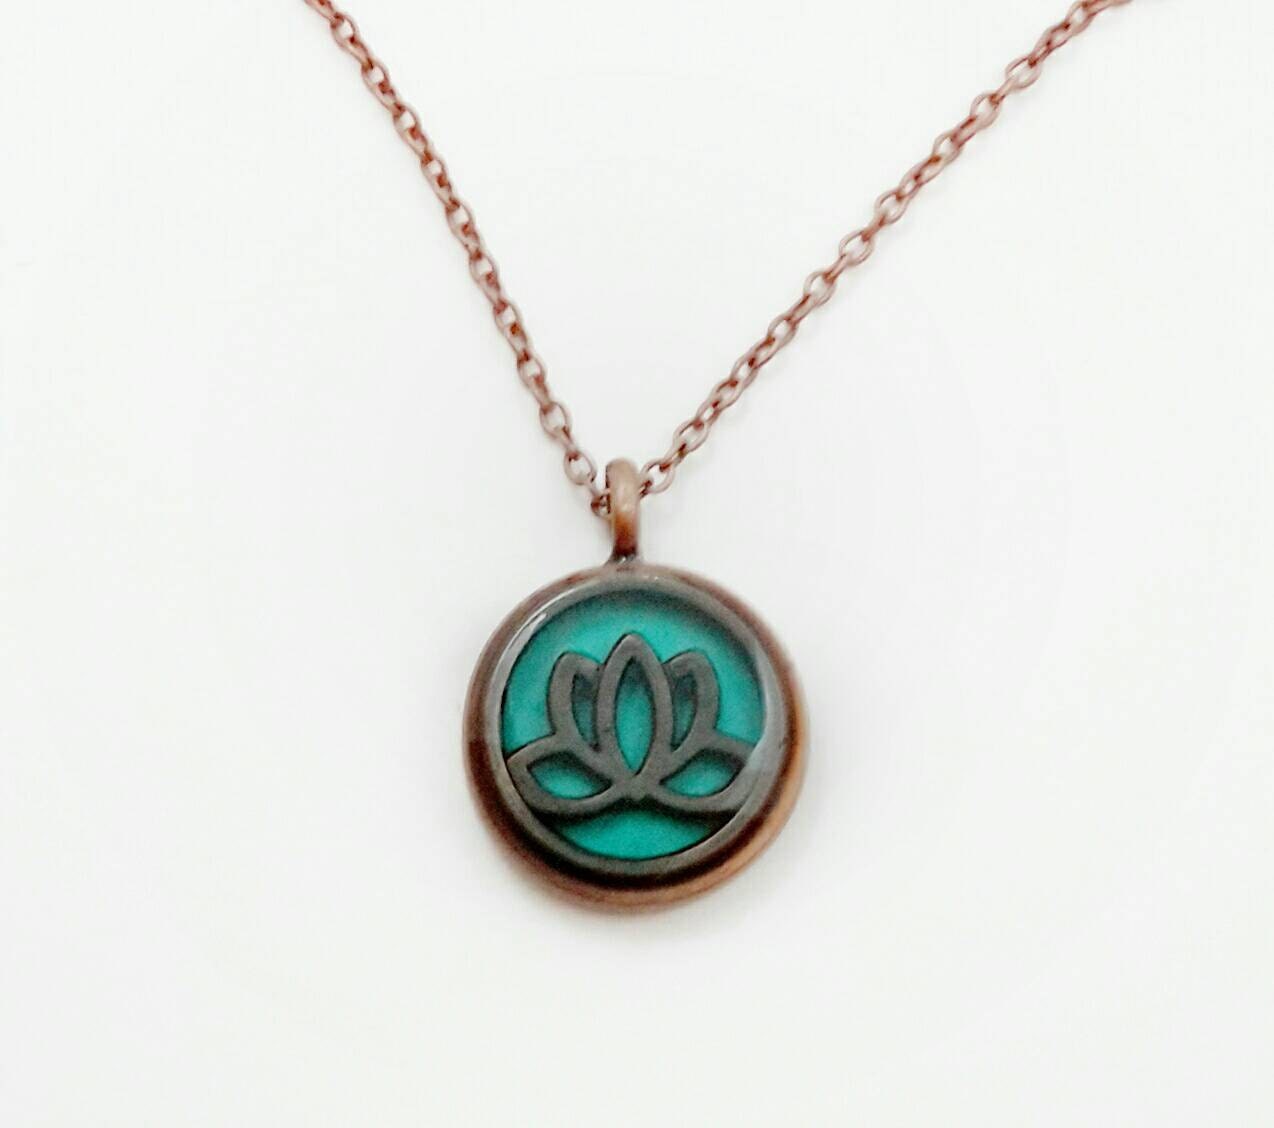 Lotus flower necklace / lotus flower jewelry / spiritual